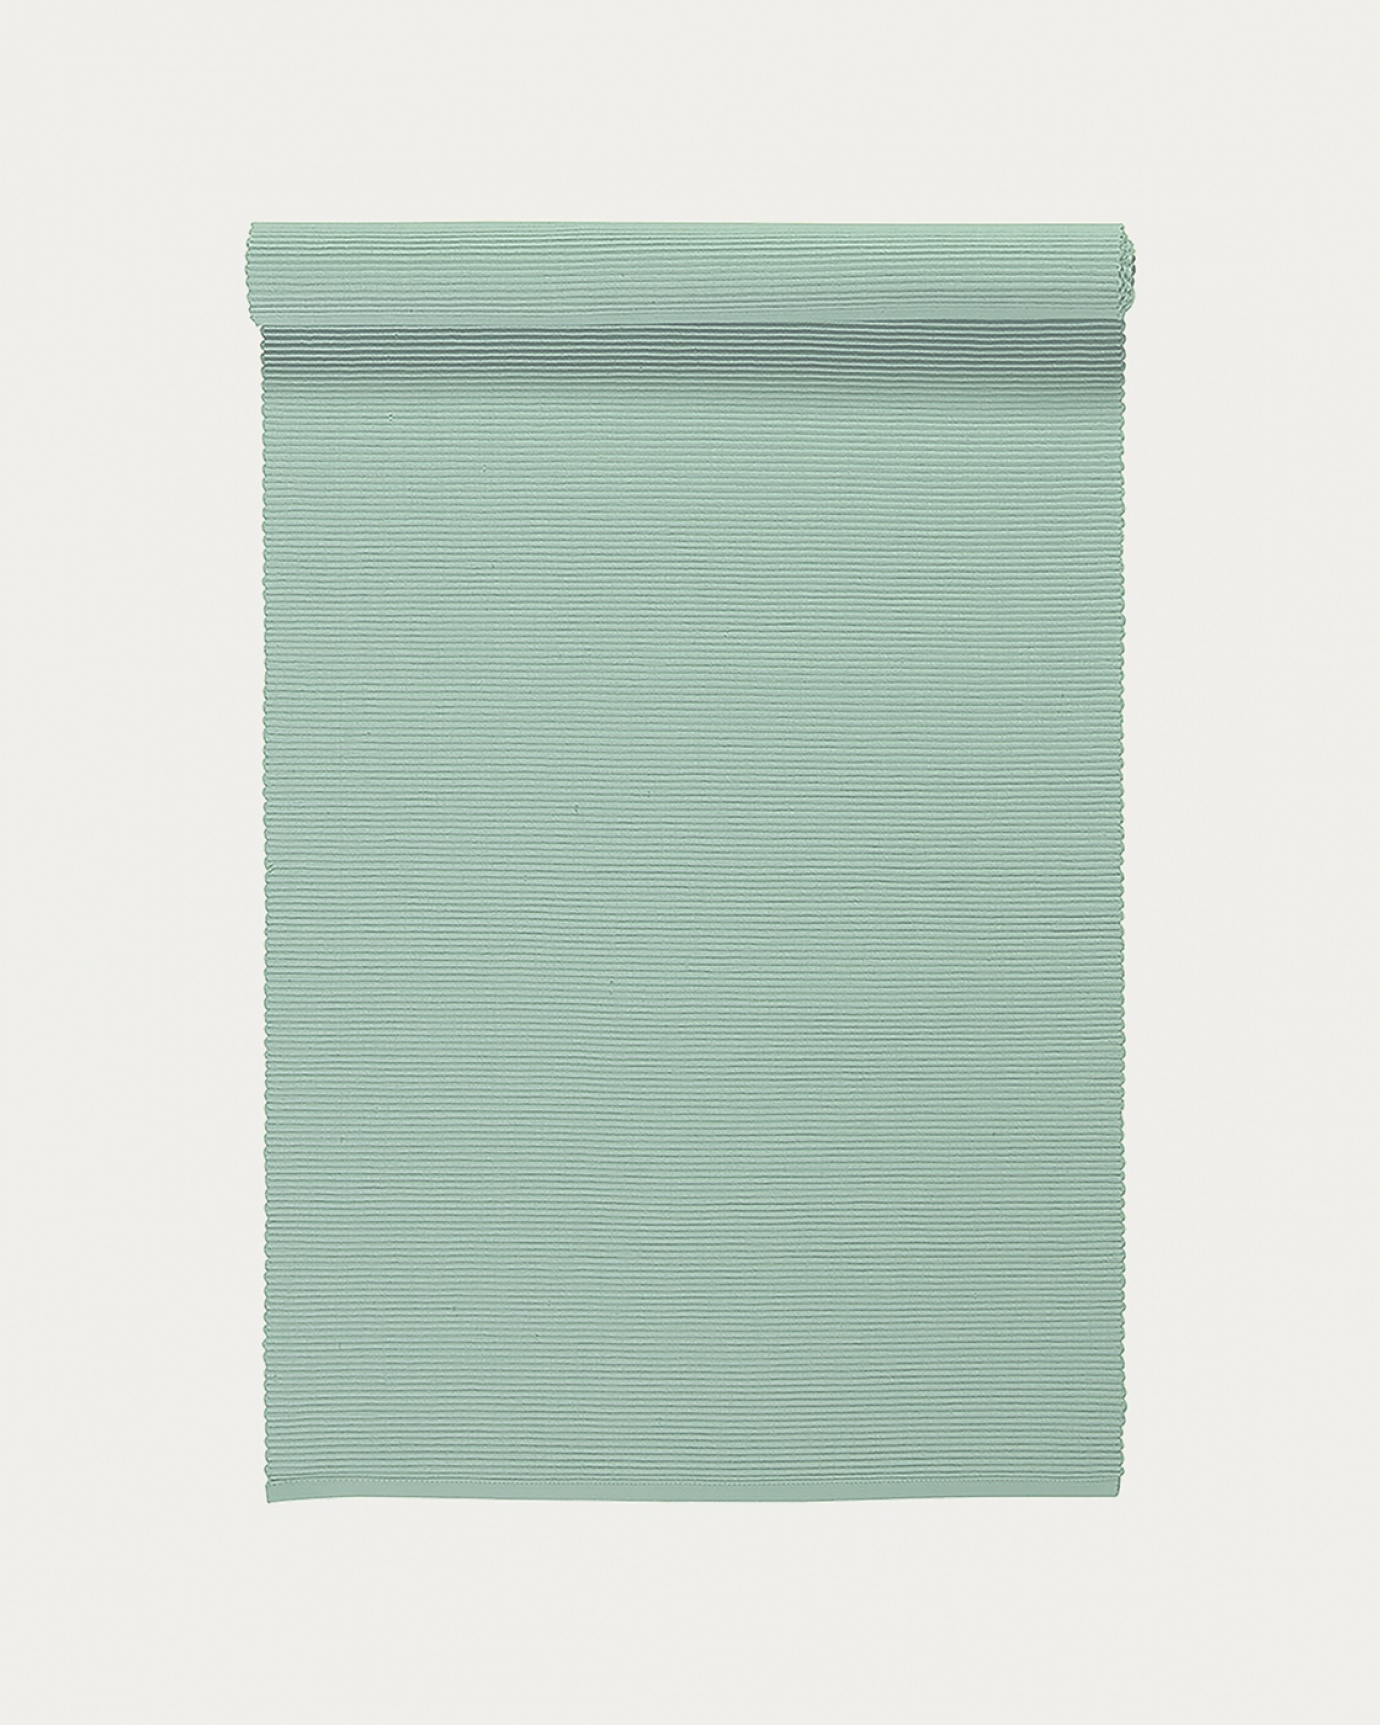 Image du produit chemin de table UNI vert clair glacé en coton doux de qualité côtelée de LINUM DESIGN. Taille 45 x 150 cm.